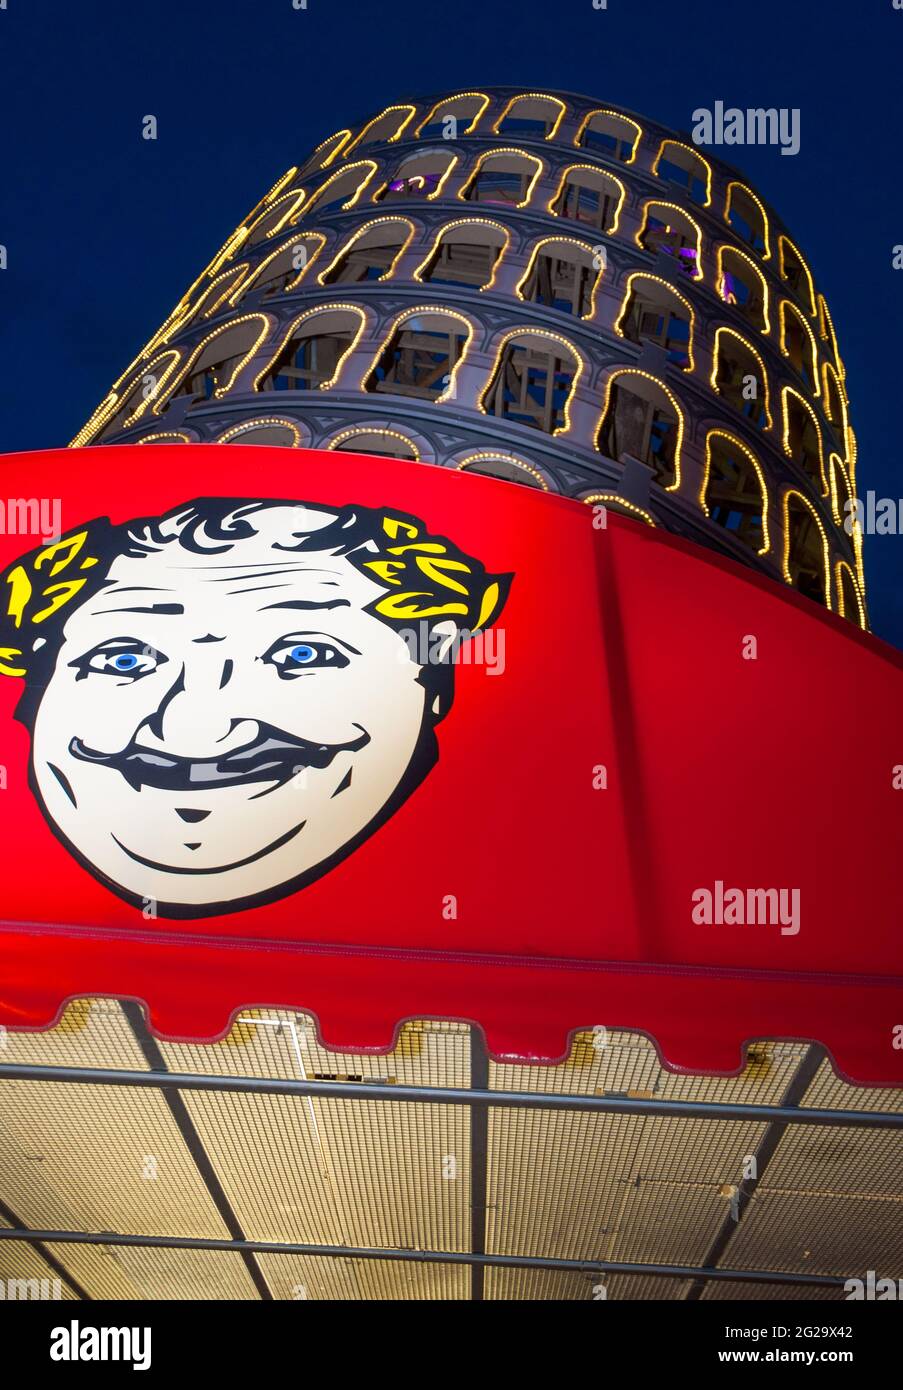 La replica della Torre Pendente di Pisa si fa balzare dietro un baldacchino rosso che presenta un disegno di un uomo sorridente che ha occhi blu, baffi e allori intorno a lui Foto Stock